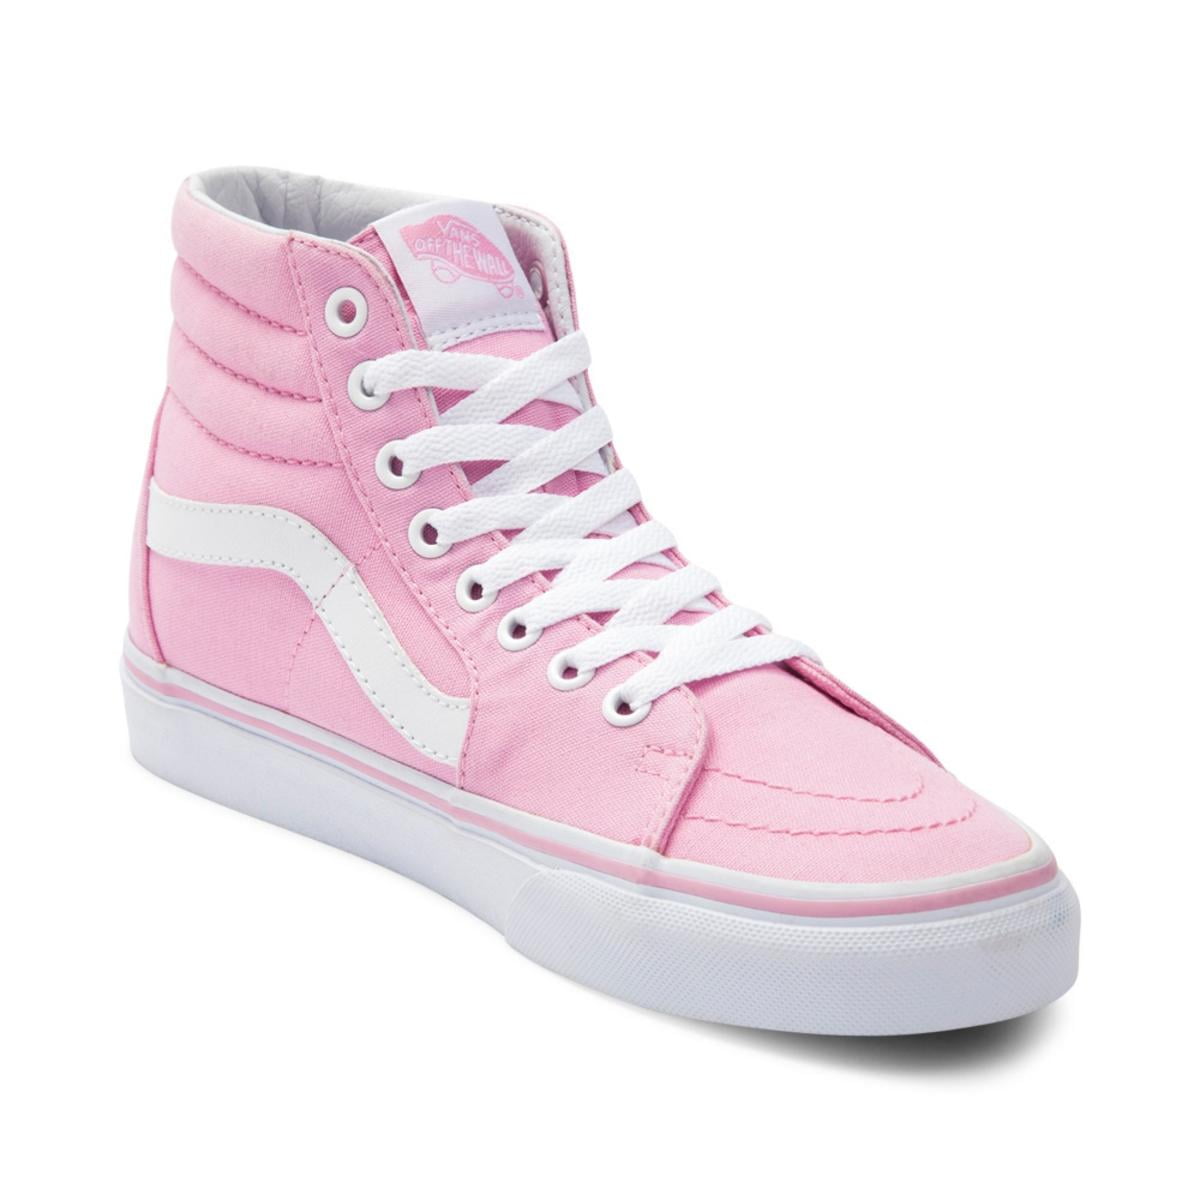 Vans Sk8-Hi (Canvas) Unisex Prism Pink/True Shoes - Walmart.com